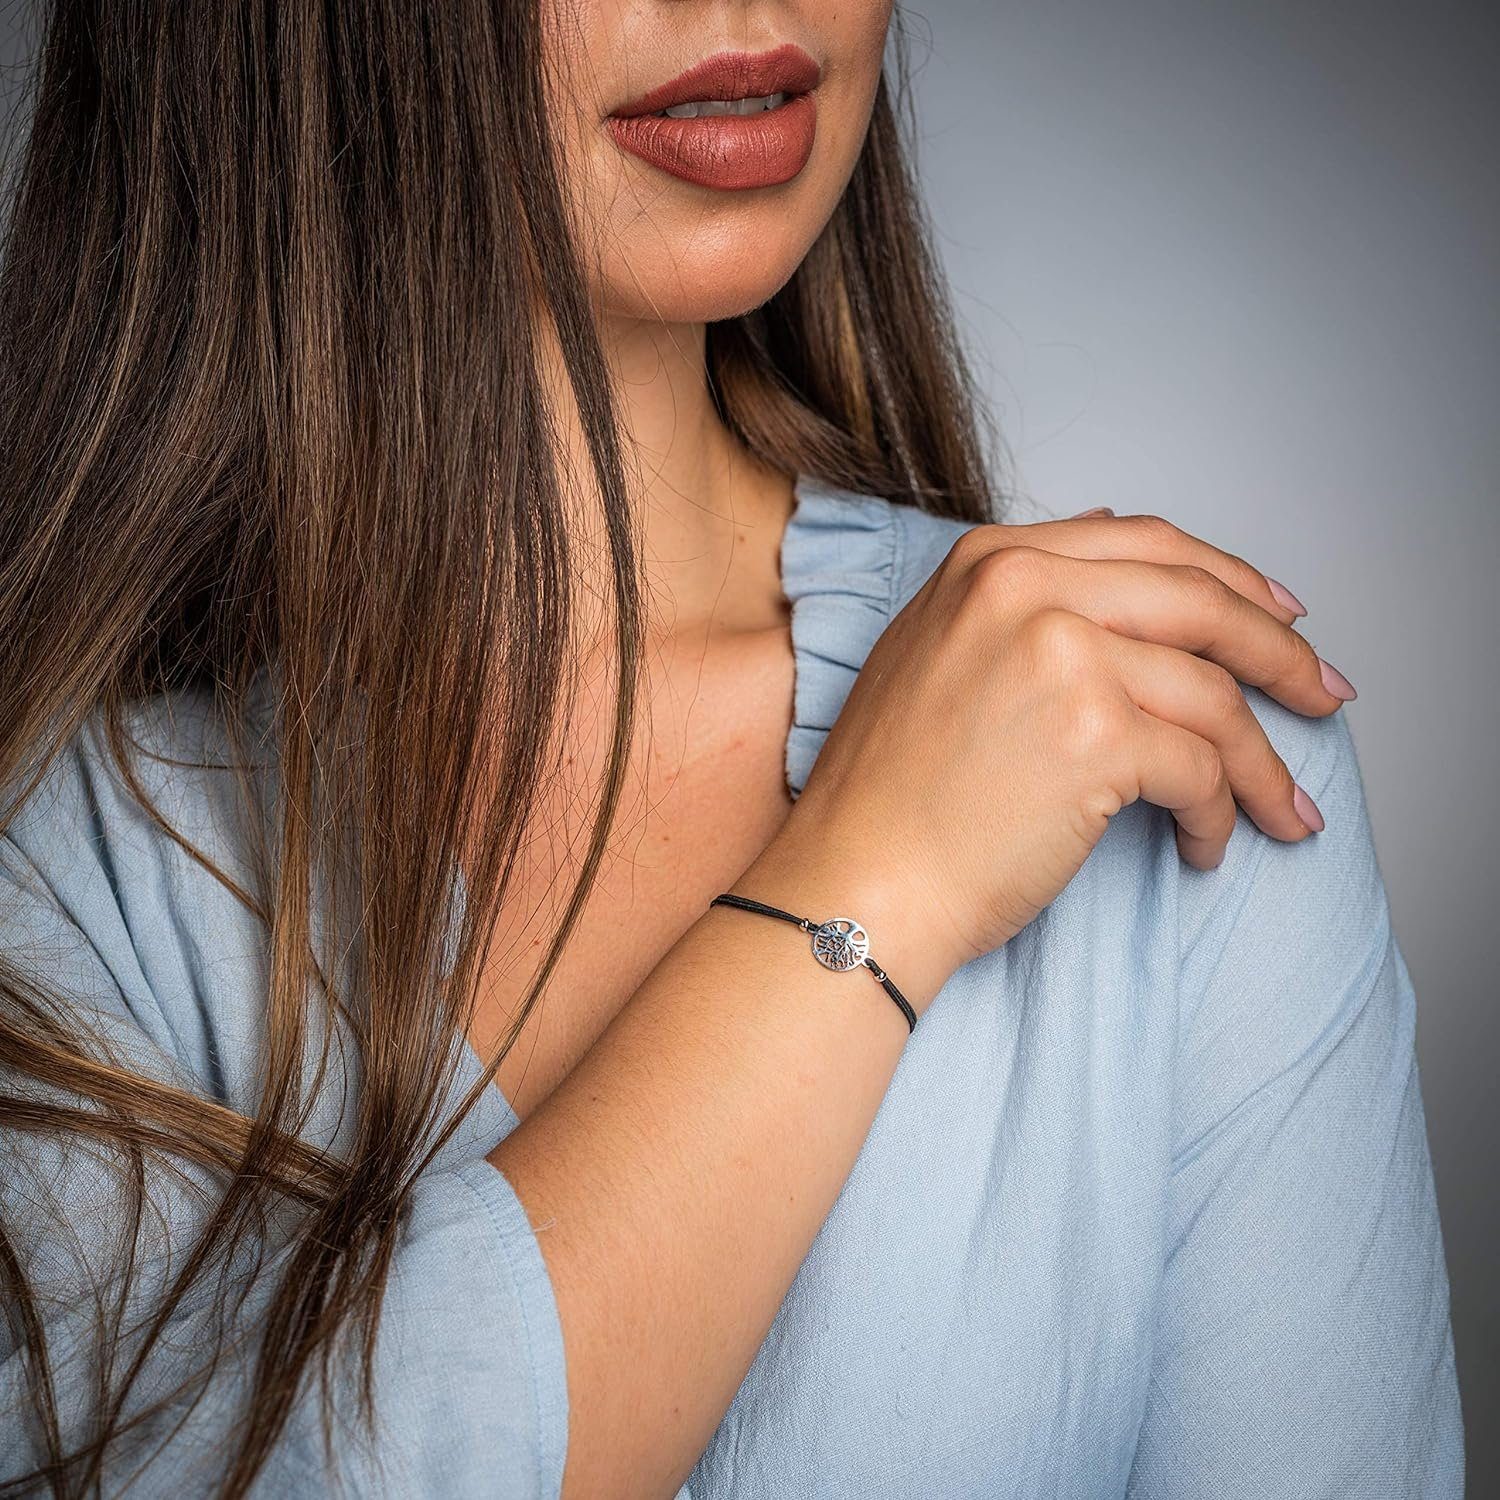 Freundschafsarmband Nami Talisman Armband Armband Elastisch Glücksbringer, Stretch Frauen Mädchen by Made